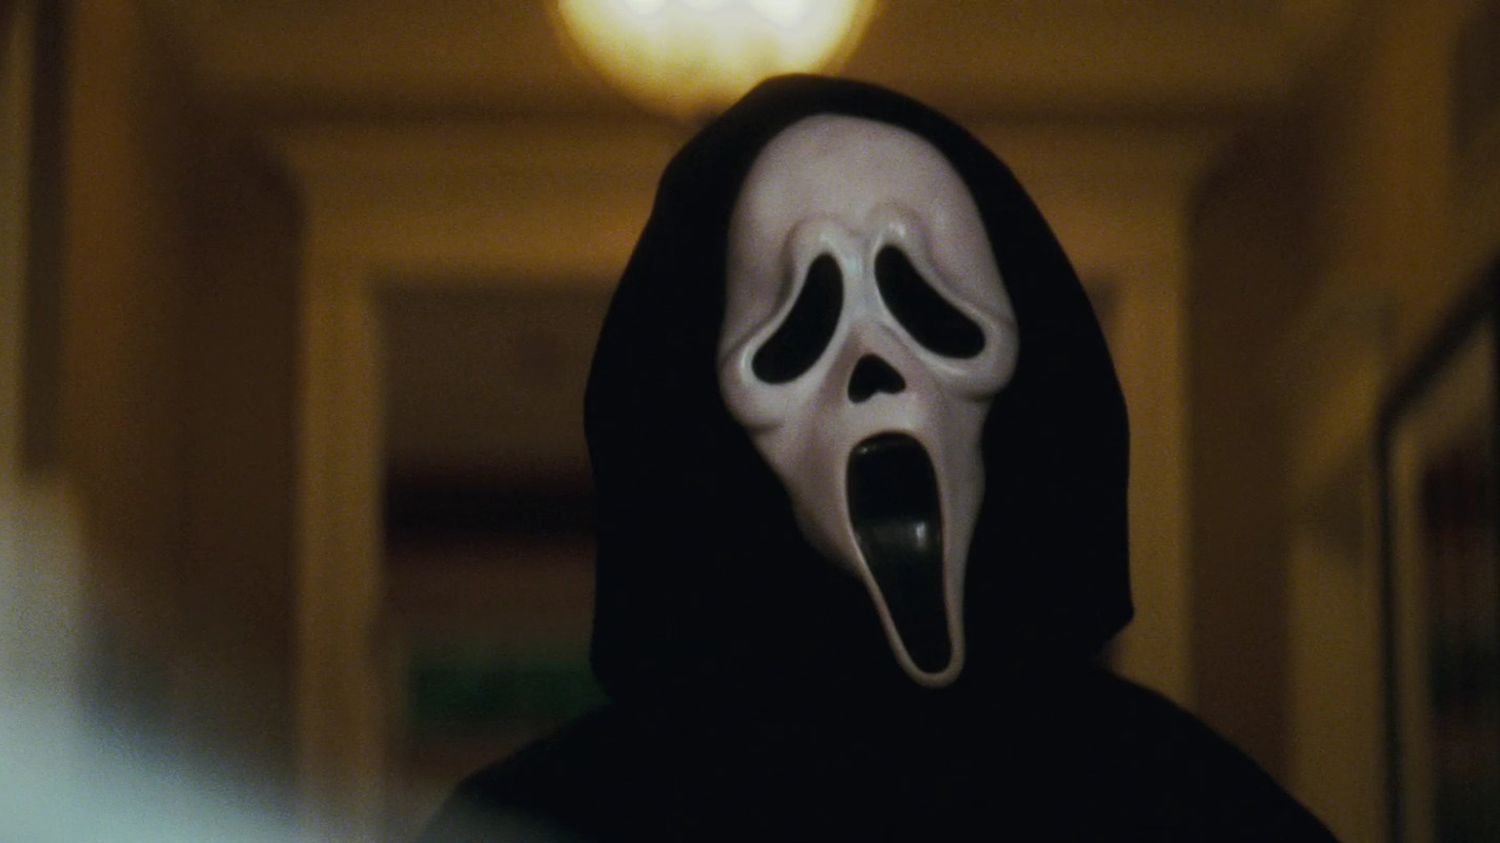 Junín: Al estilo "payaso asustador", hombre atemoriza gente con máscara de película Scream